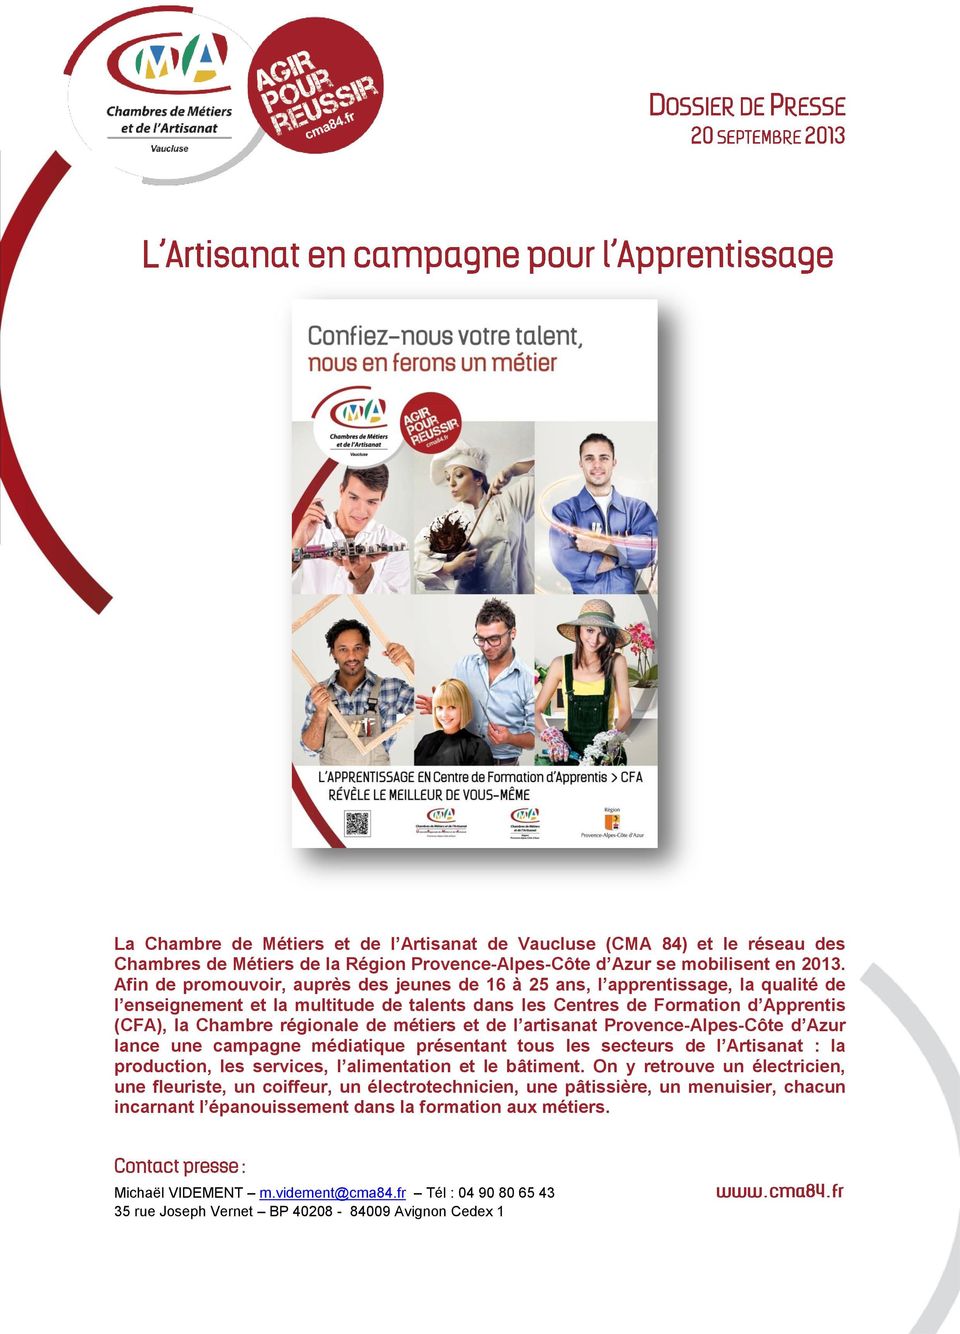 métiers et de l artisanat Provence-Alpes-Côte d Azur lance une campagne médiatique présentant tous les secteurs de l Artisanat : la production, les services, l alimentation et le bâtiment.